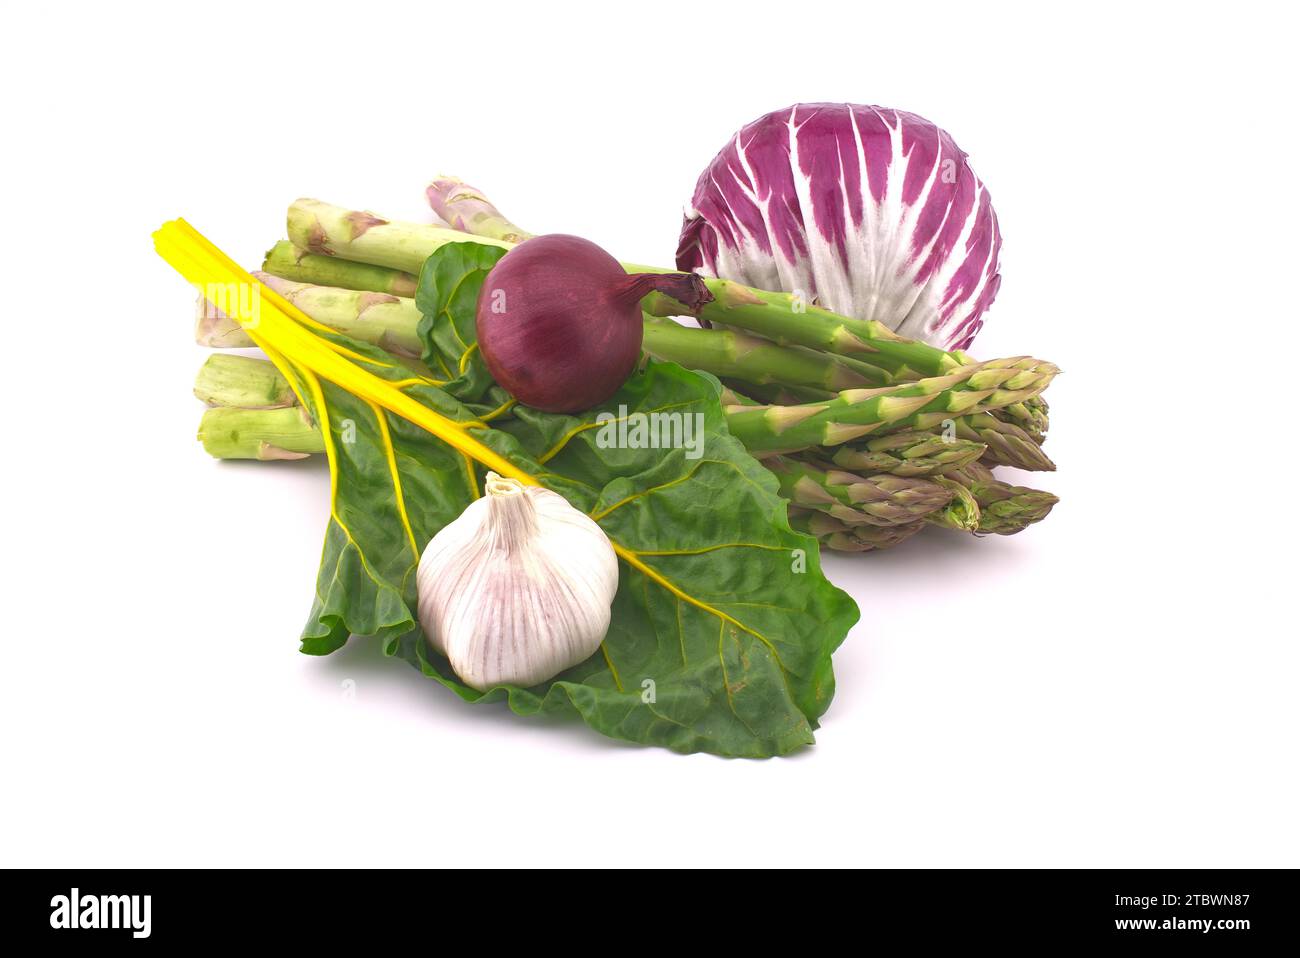 Assortiment de betteraves fraîches colorées, dont des feuilles de betterave, des asperges, de la salade radicchio, de l'oignon et de l'ail isolés sur fond blanc Banque D'Images